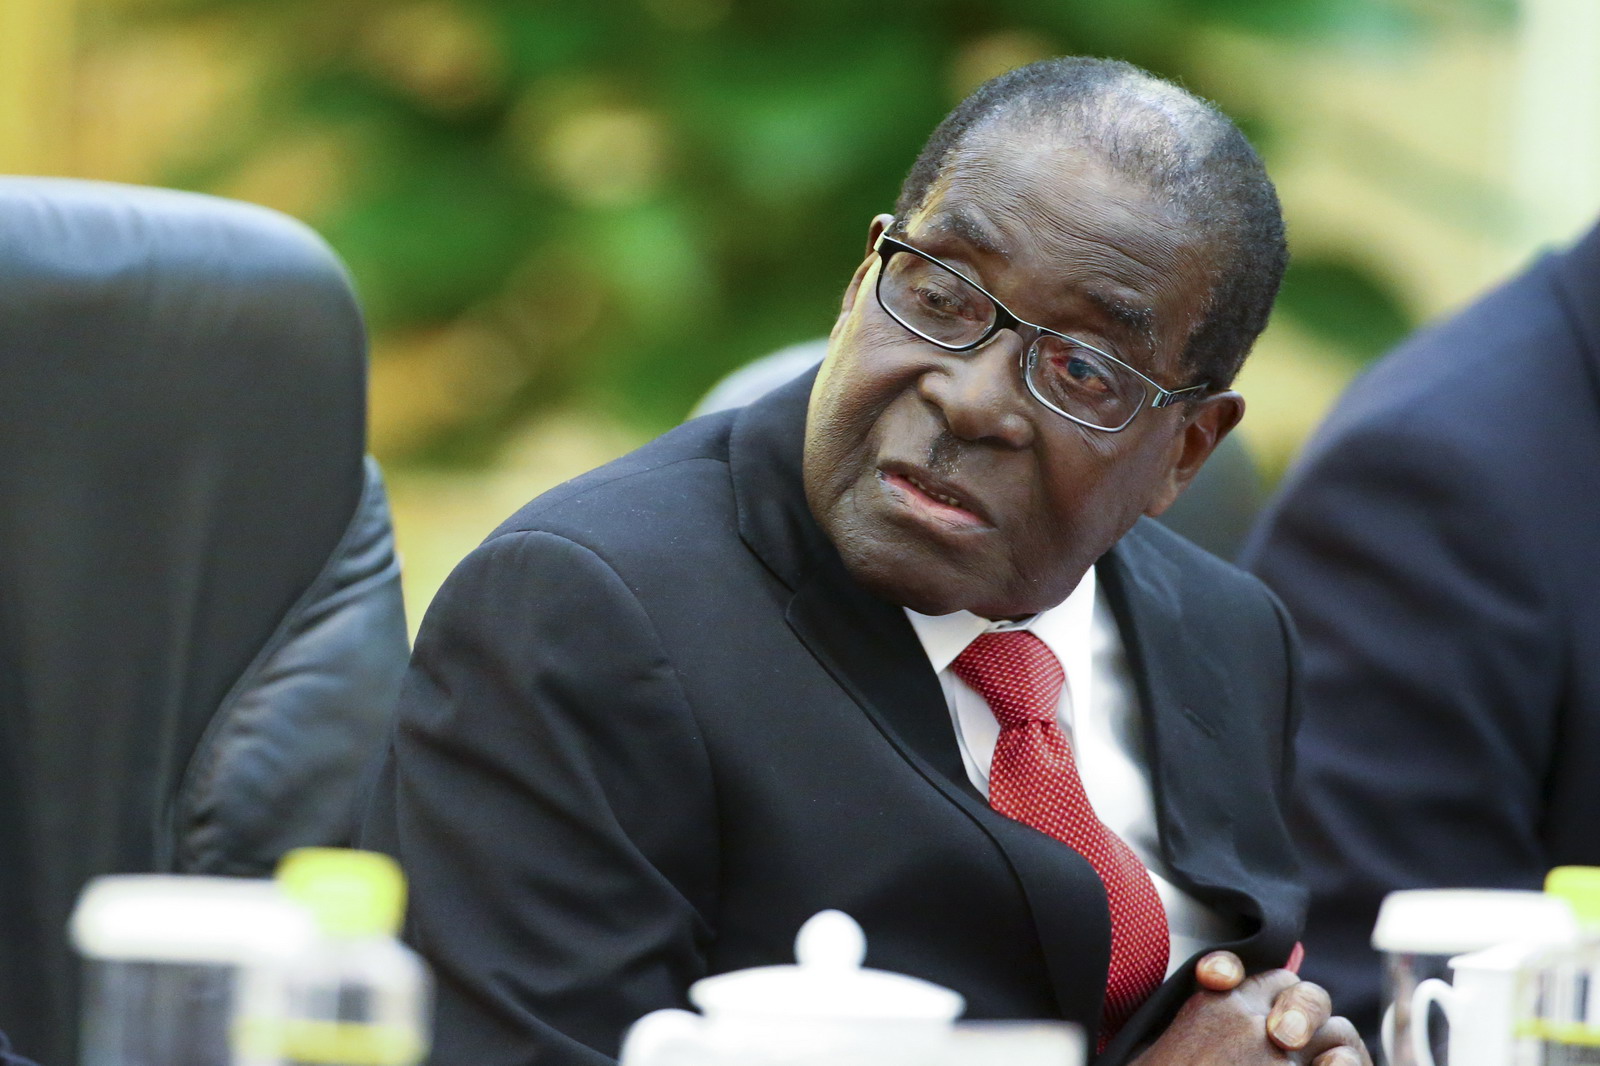 Zimbabwe tartozik, az Afrikai Fejlesztési Bank követel